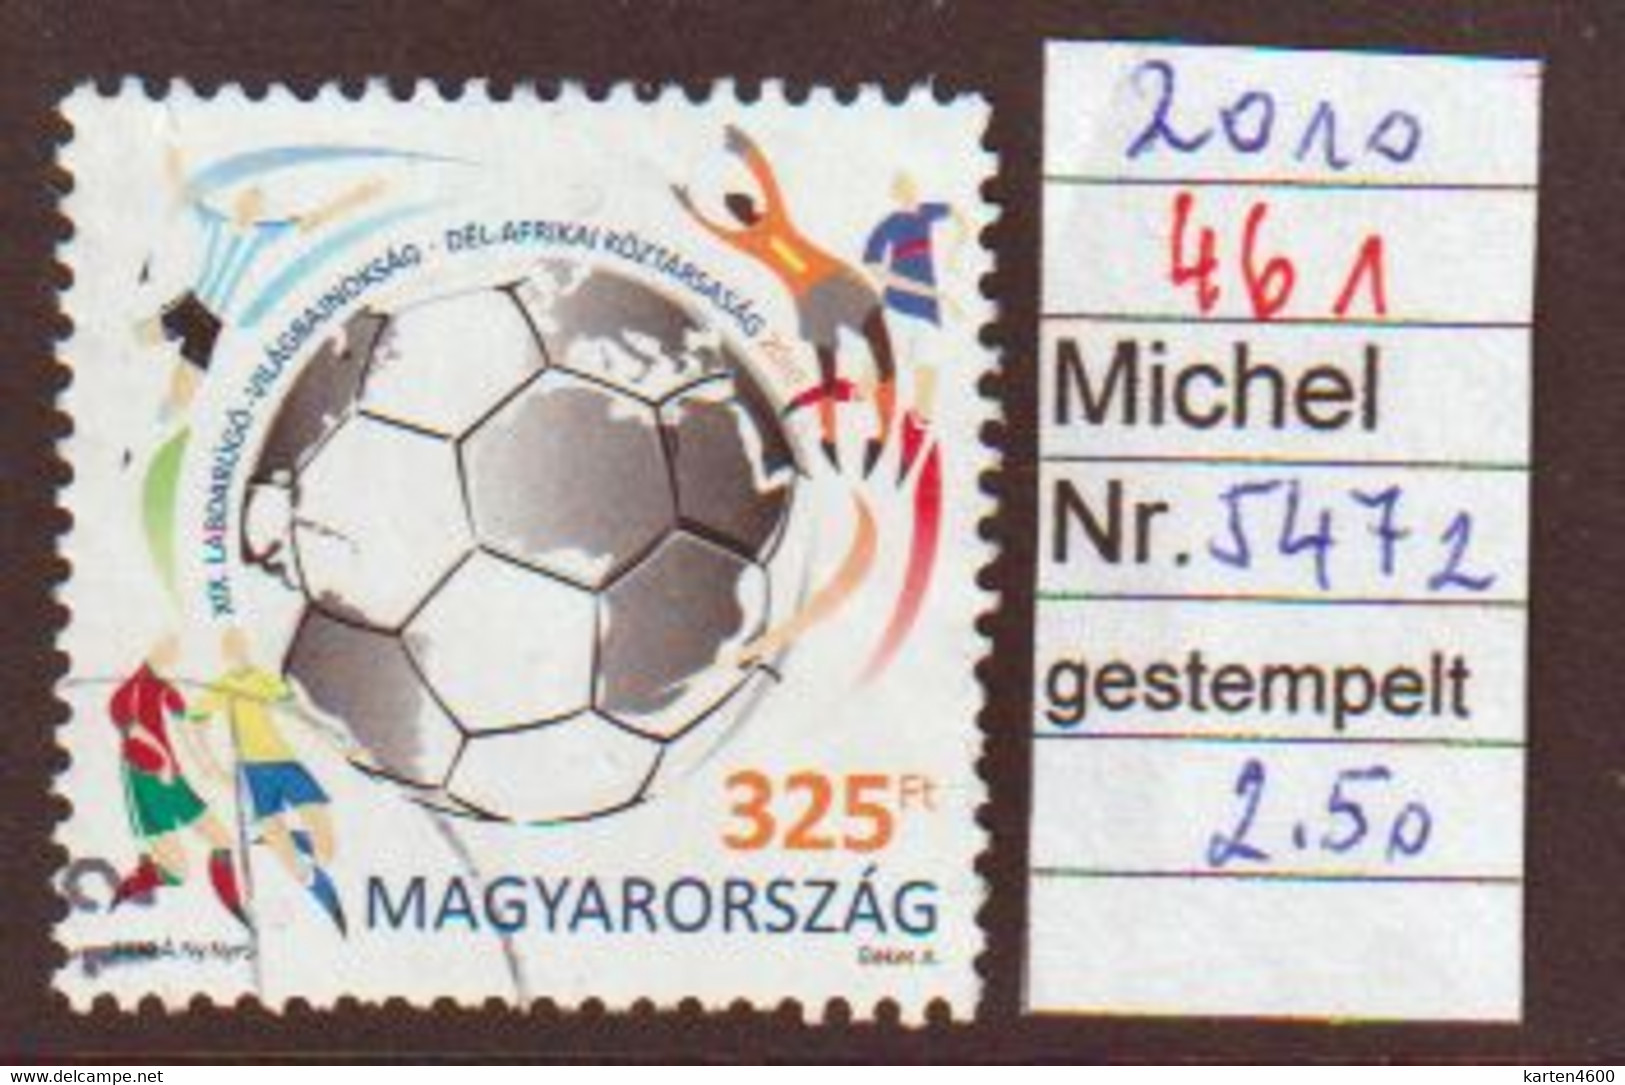 Fußball WM Südafrika  2010  (461) - Used Stamps